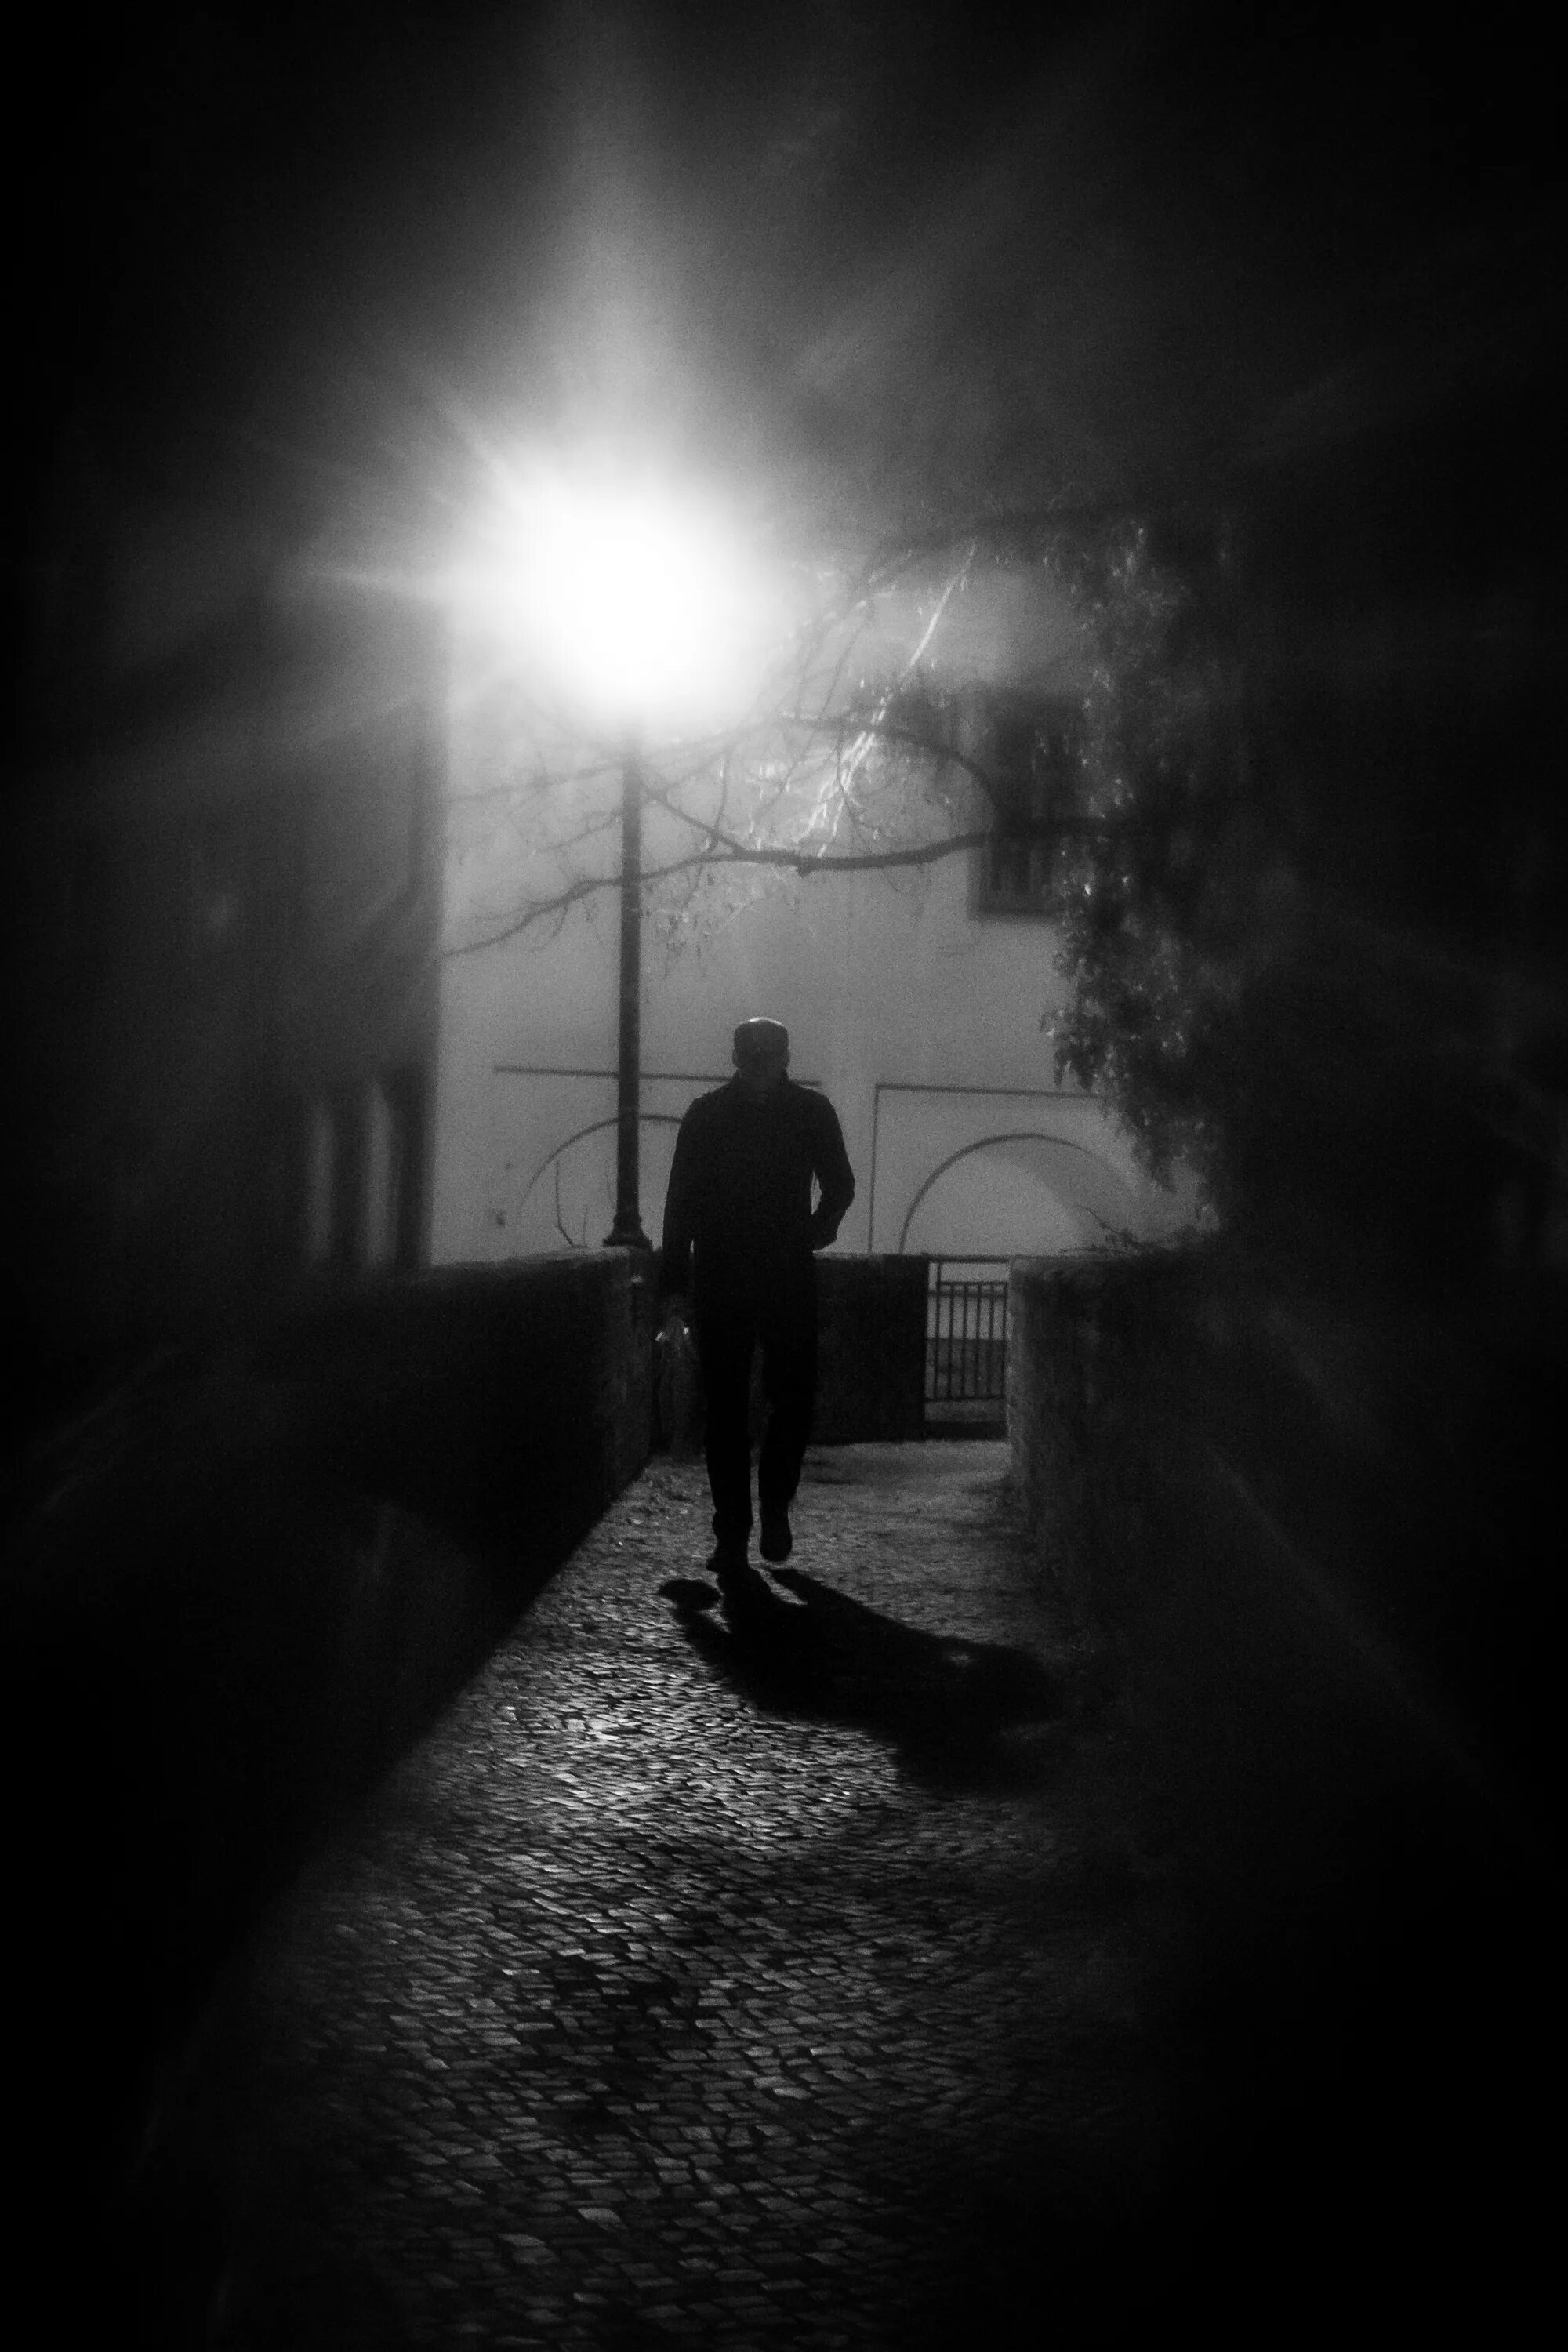 Парень в темноте. Человек на темной улице. Тени ушедших. Одиночество в ночи. Наугад в темноту